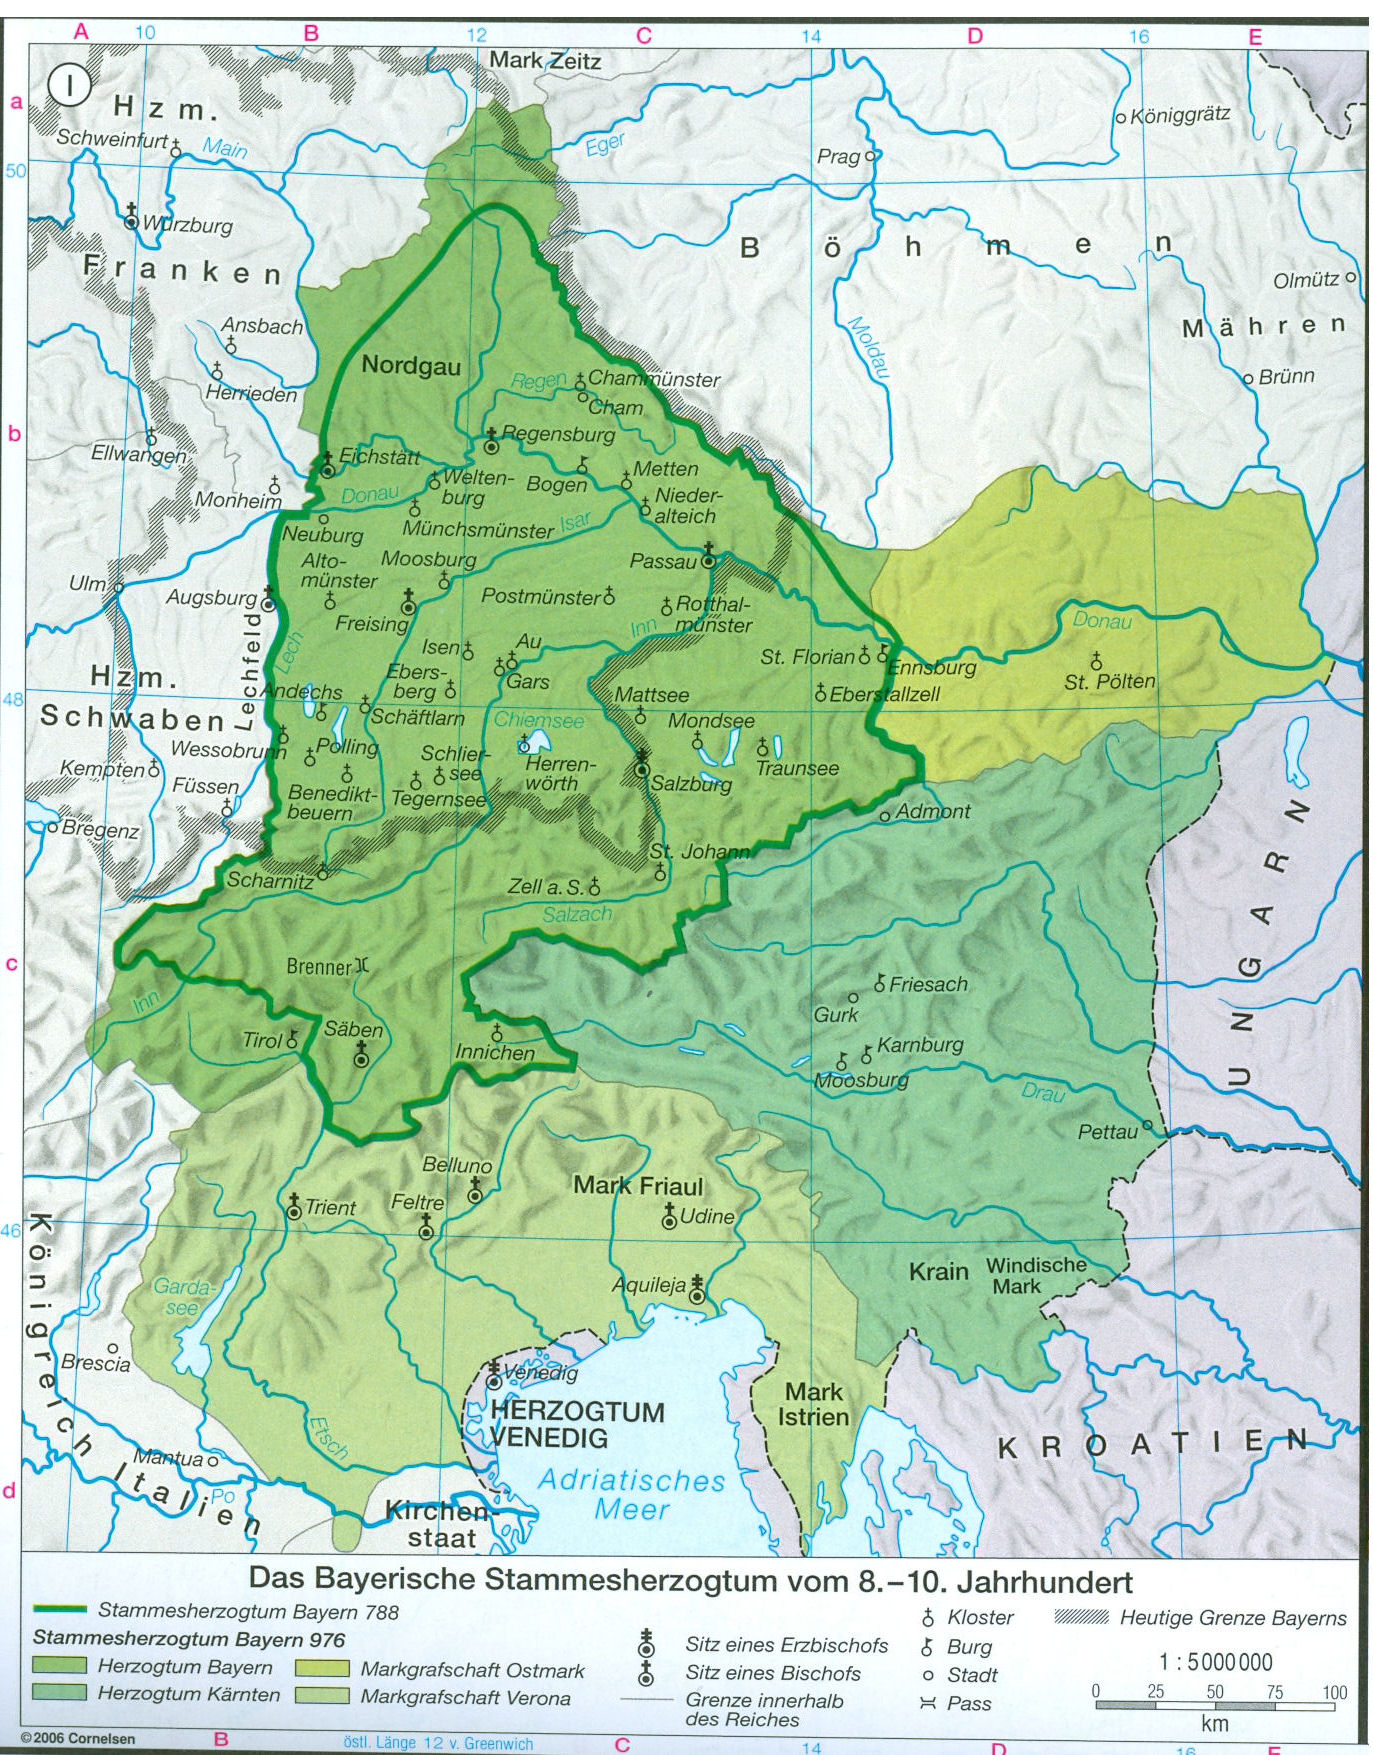 Bayern im 8. bis 10. Jahrhundert